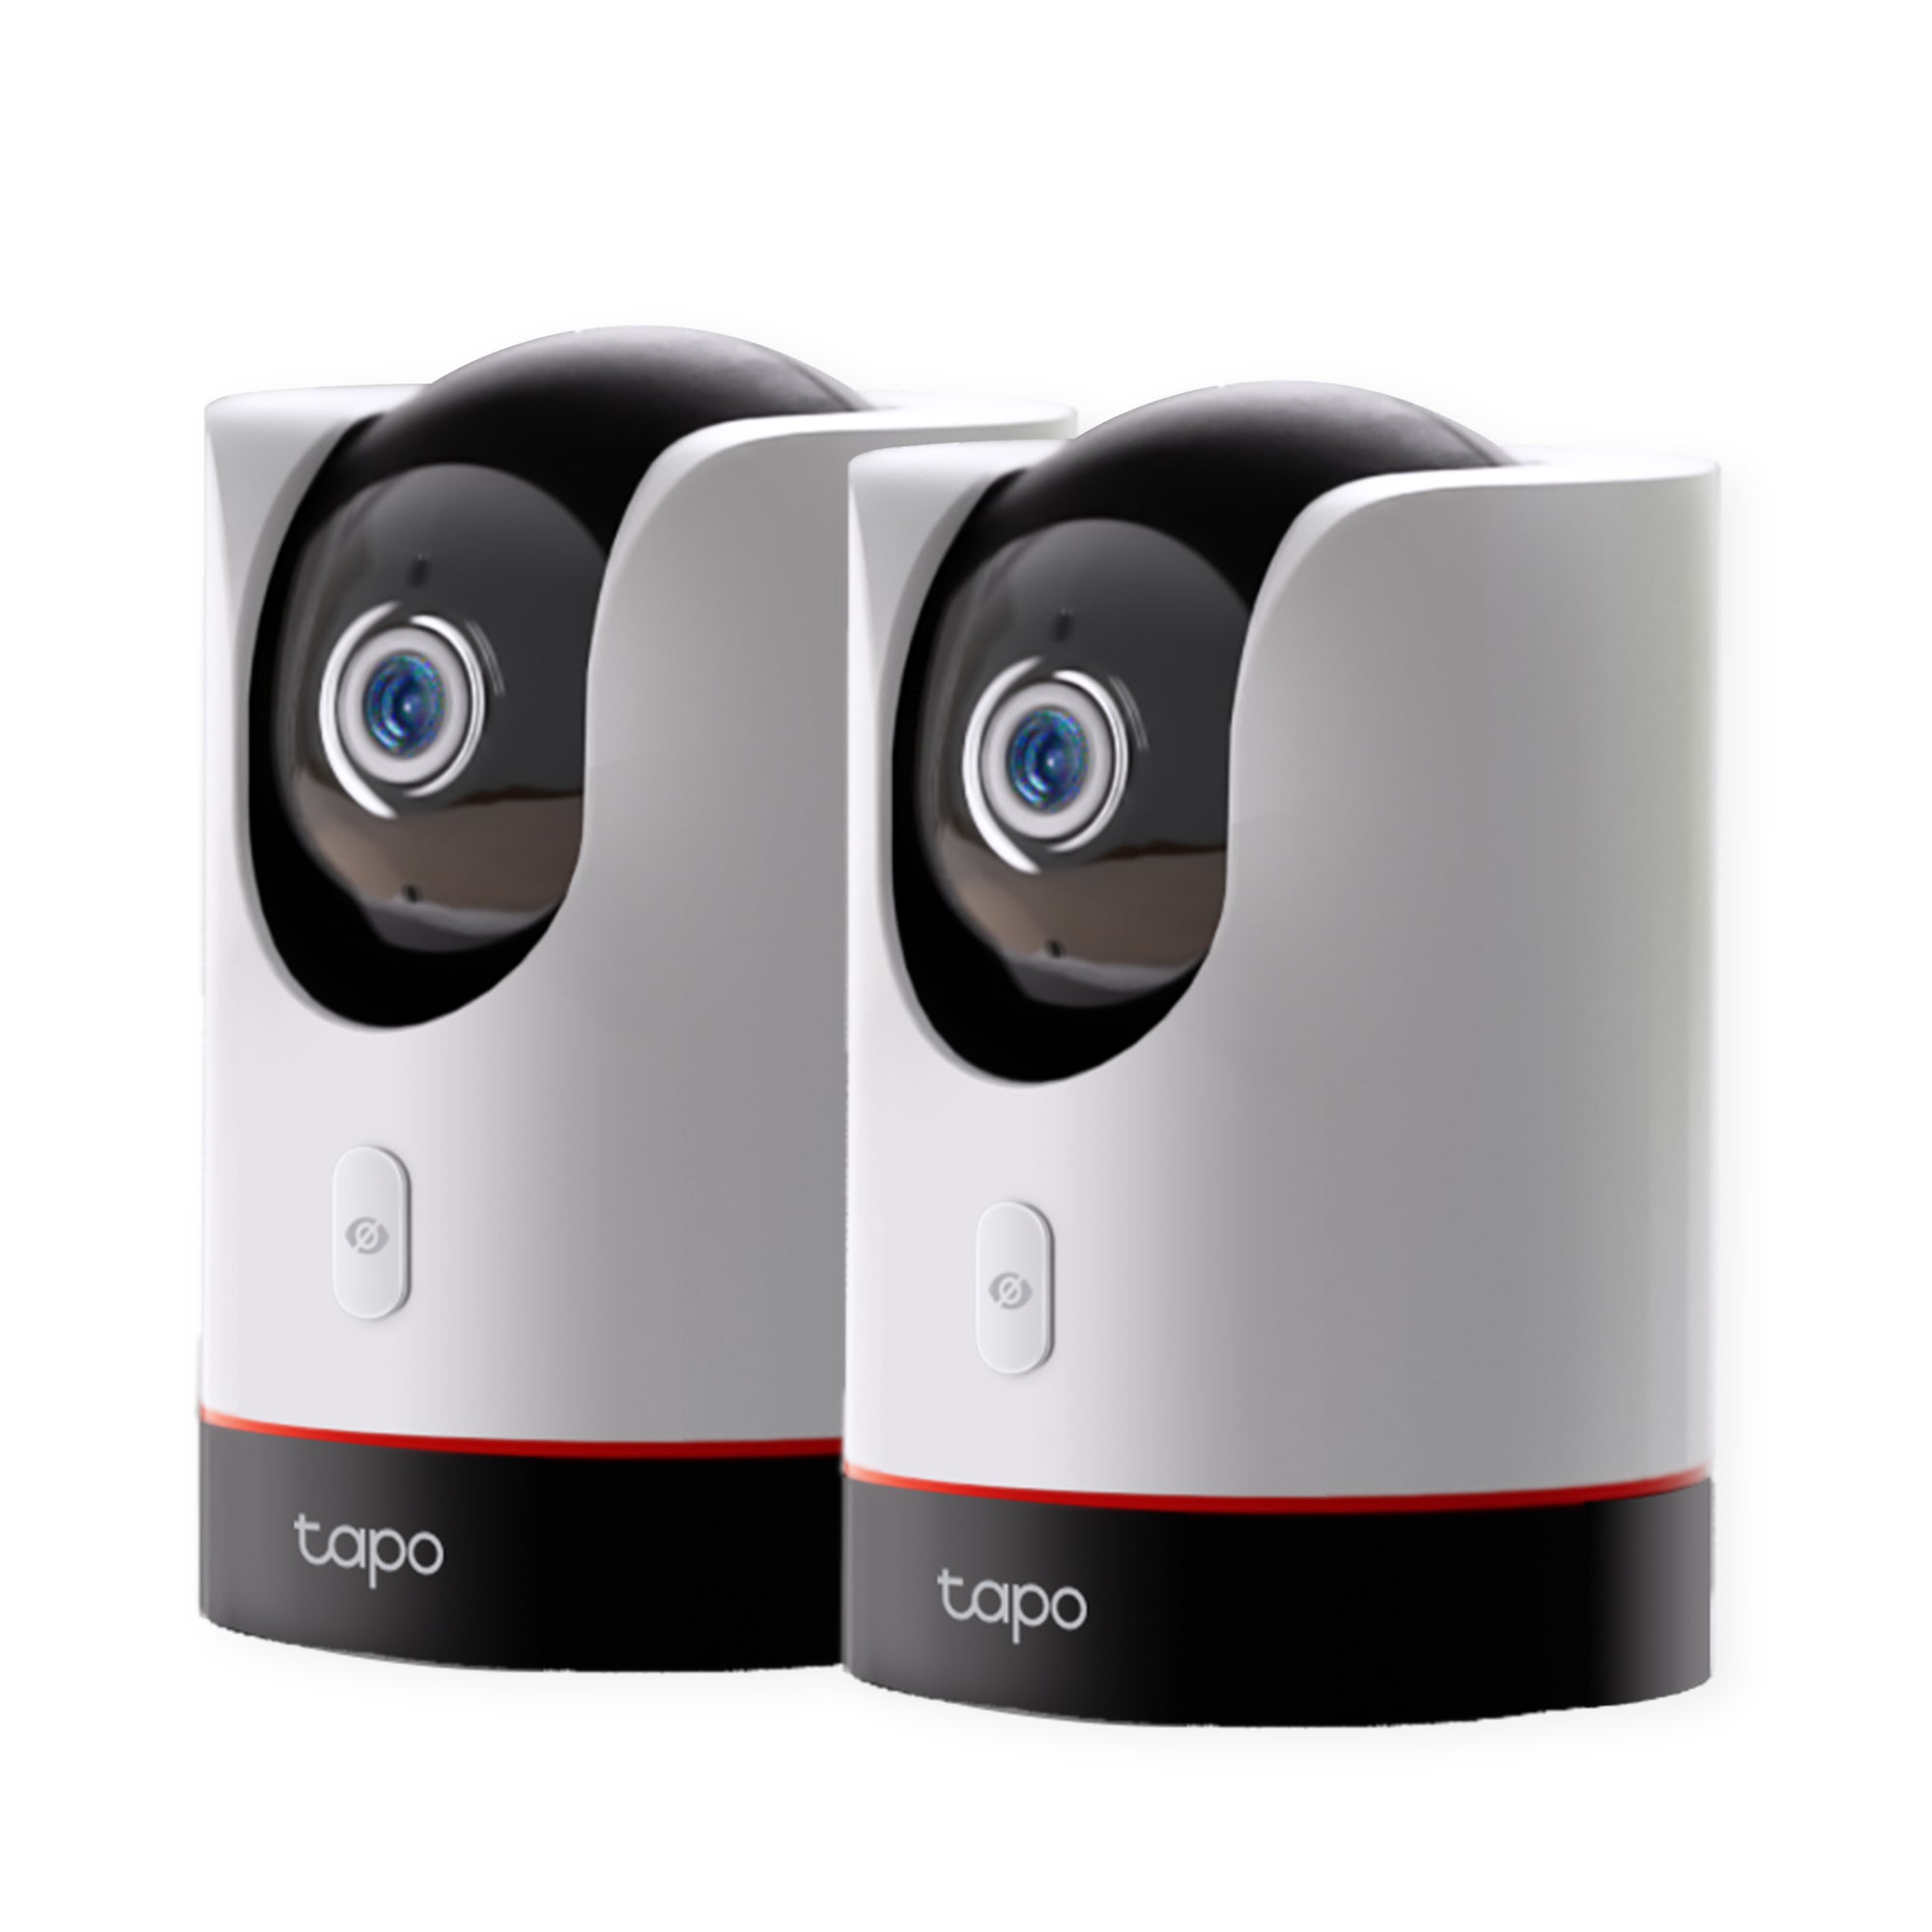 Tapo C225, Pan/Tilt AI Home Security Wi-Fi Camera